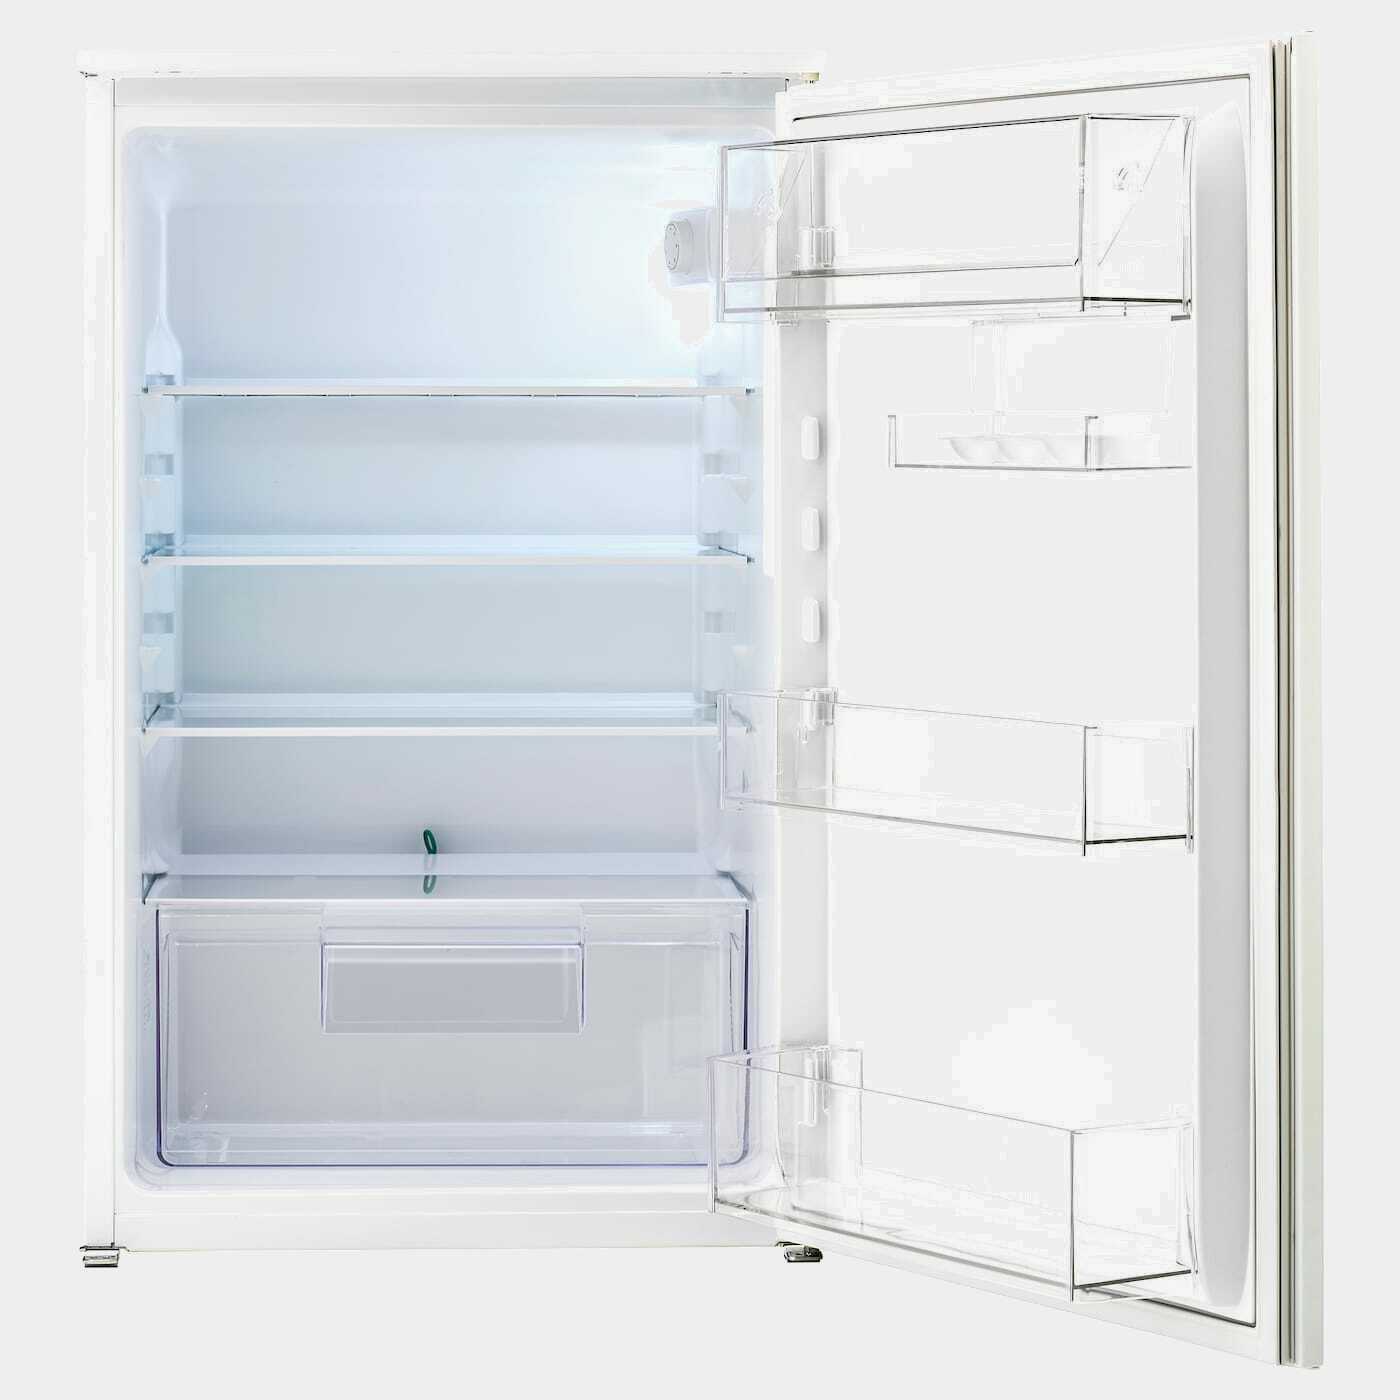 SVALNA Kühlschrank  -  - Möbel Ideen für dein Zuhause von Home Trends. Möbel Trends von Social Media Influencer für dein Skandi Zuhause.